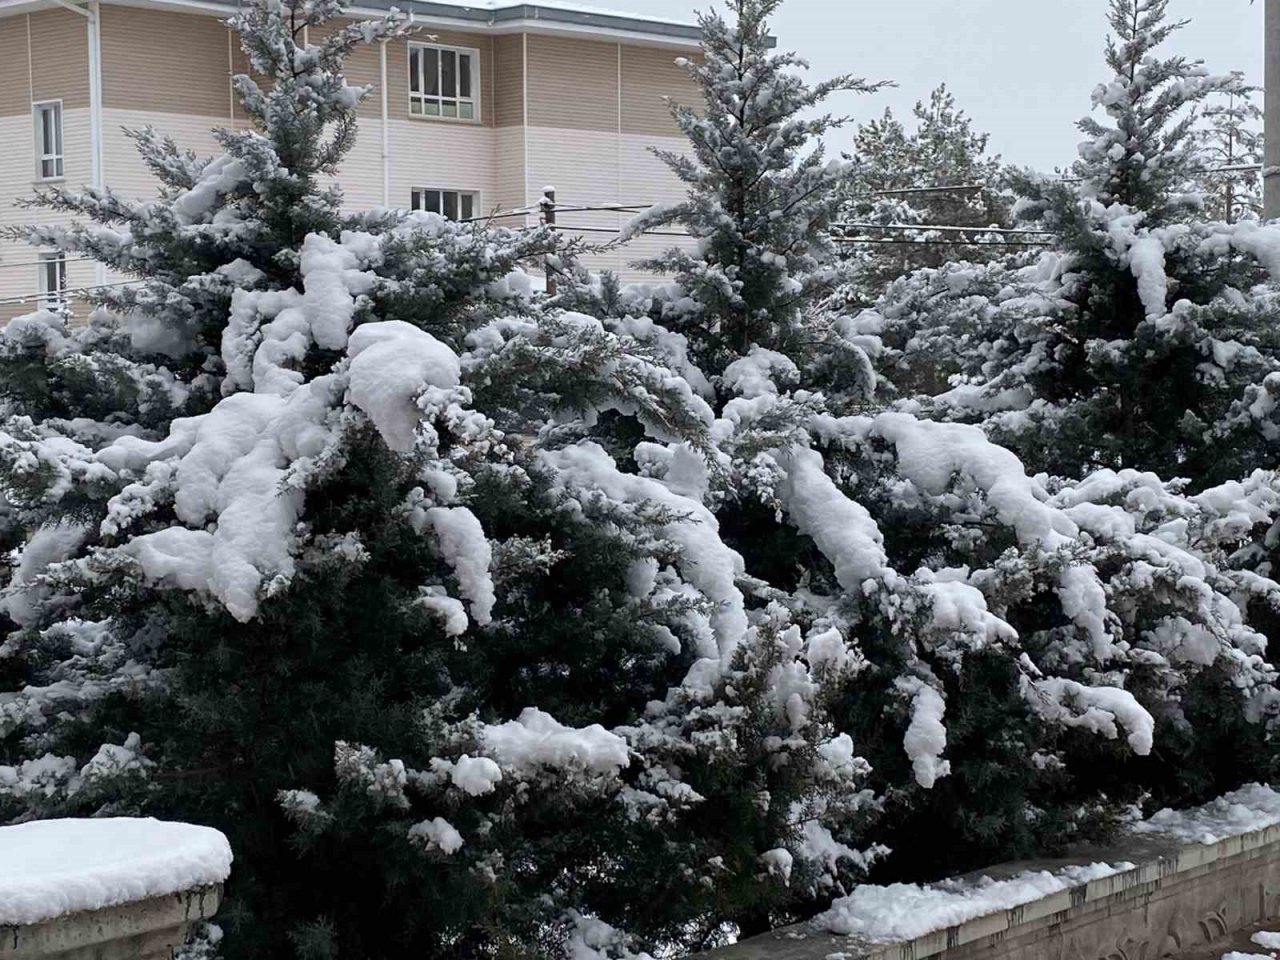 Kulu’da yılının ilk karı yağdı